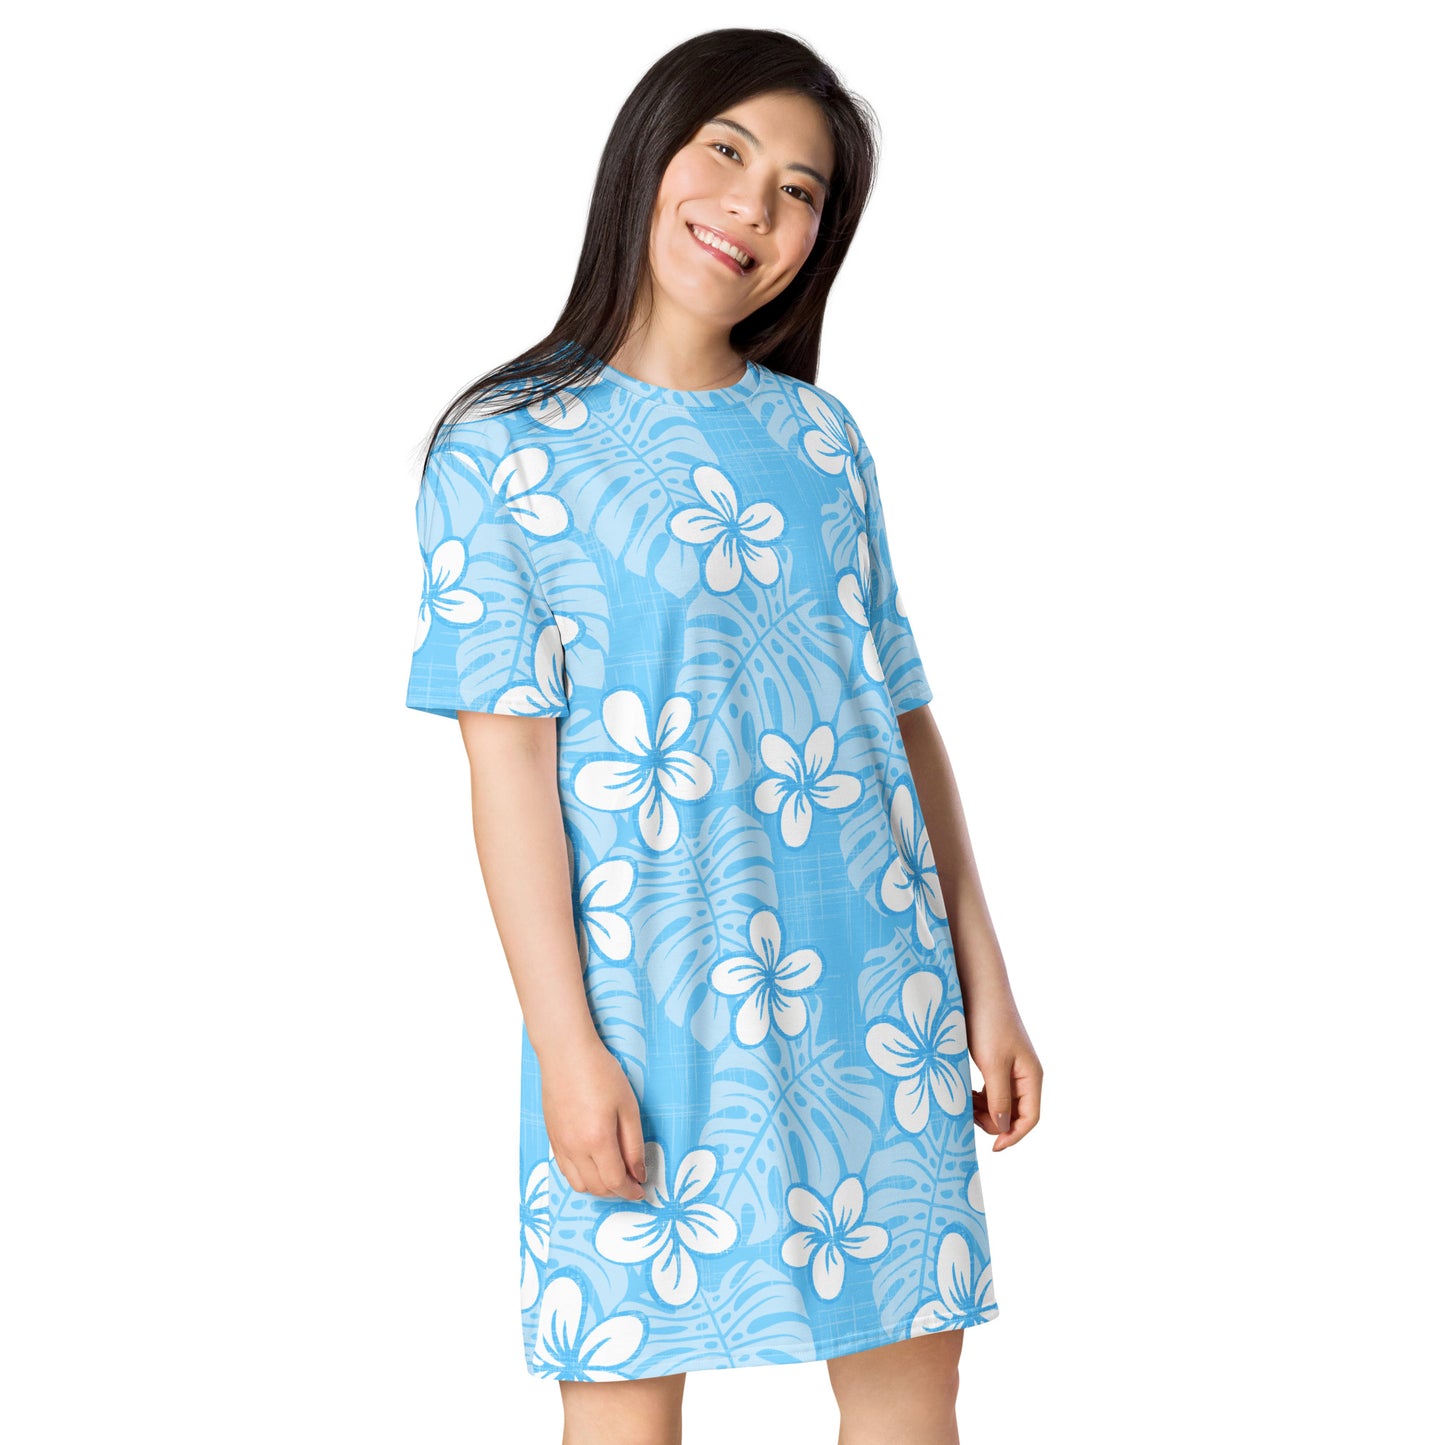 Pale Blue Garden T-shirt dress